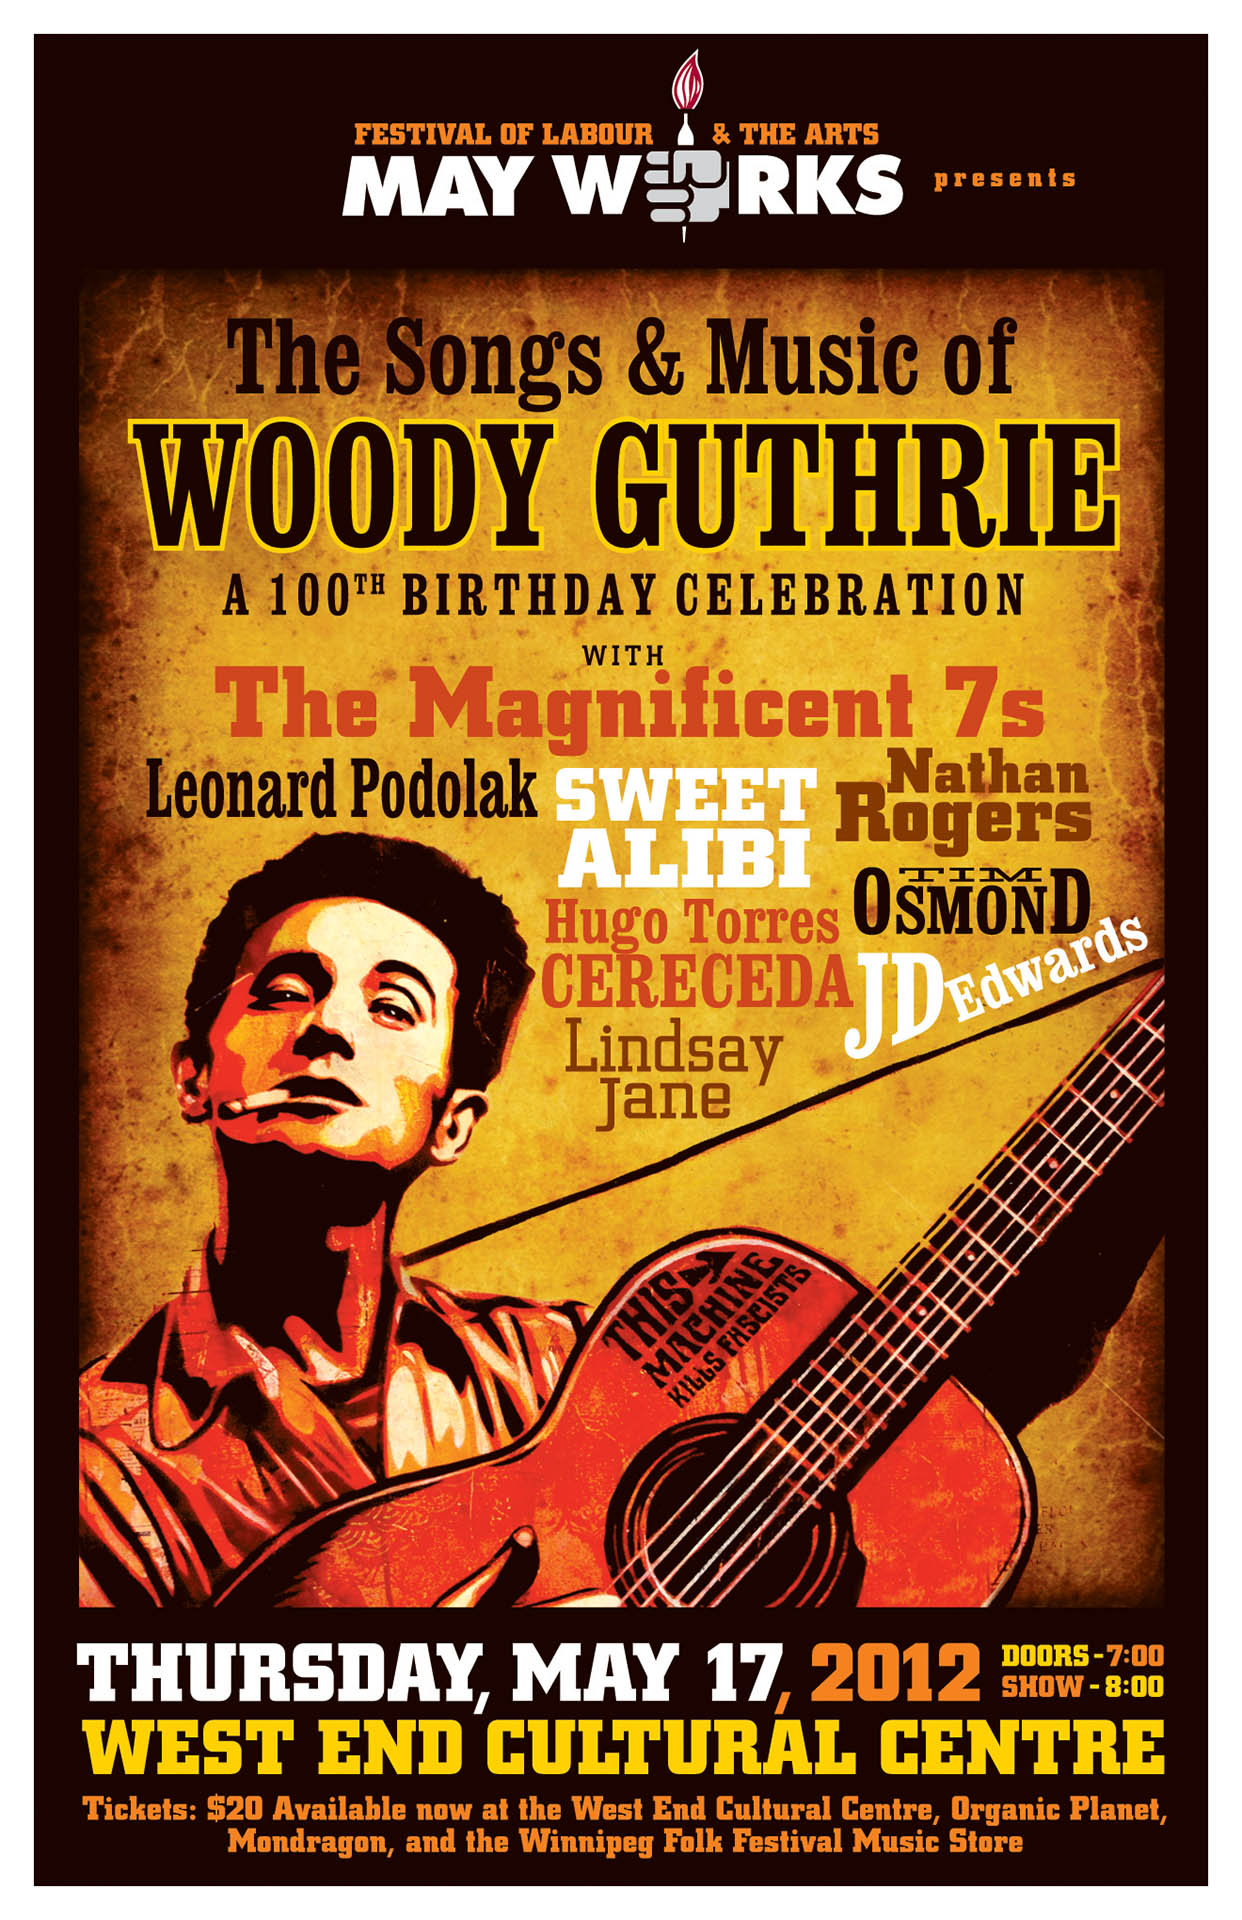 WOODY GUTHRIE 100TH BIRTHDAY – 2012